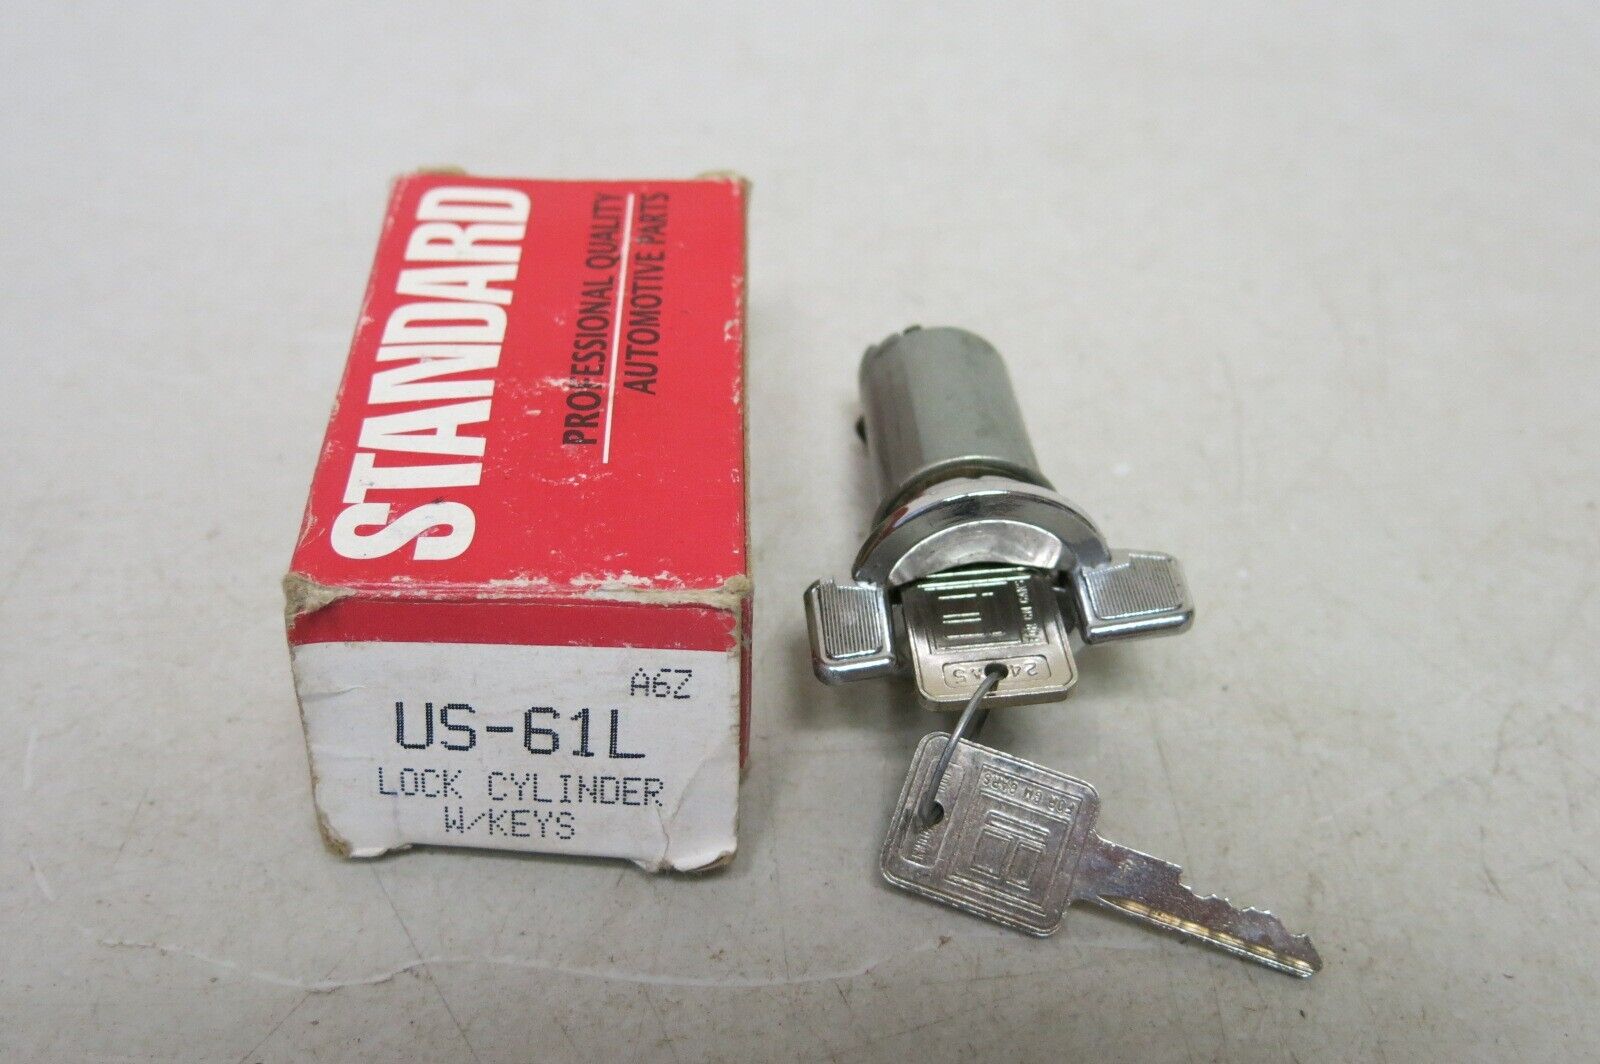 Vintage Standard US-61L Ignition Lock Cylinder + Keys fits GM Vehicles